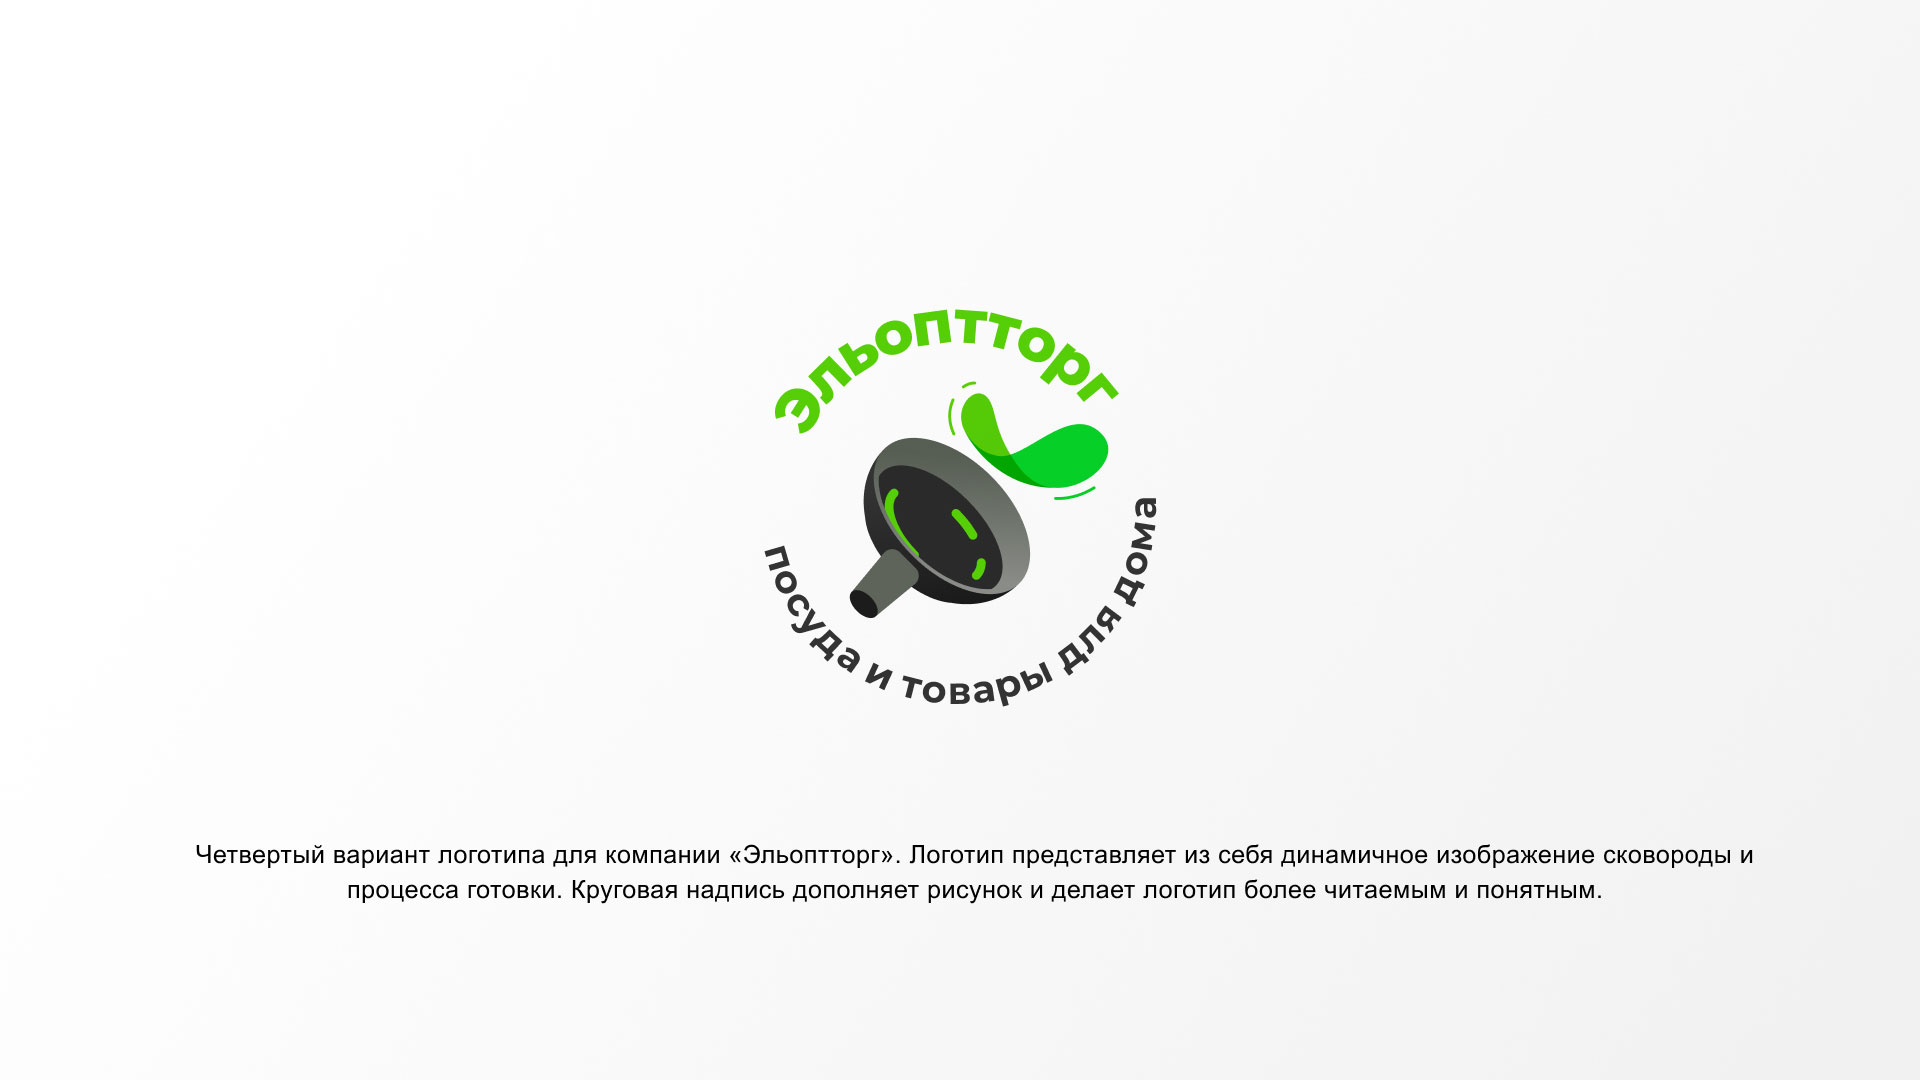 Разработка логотипа для компании по продаже посуды и товаров для дома в 